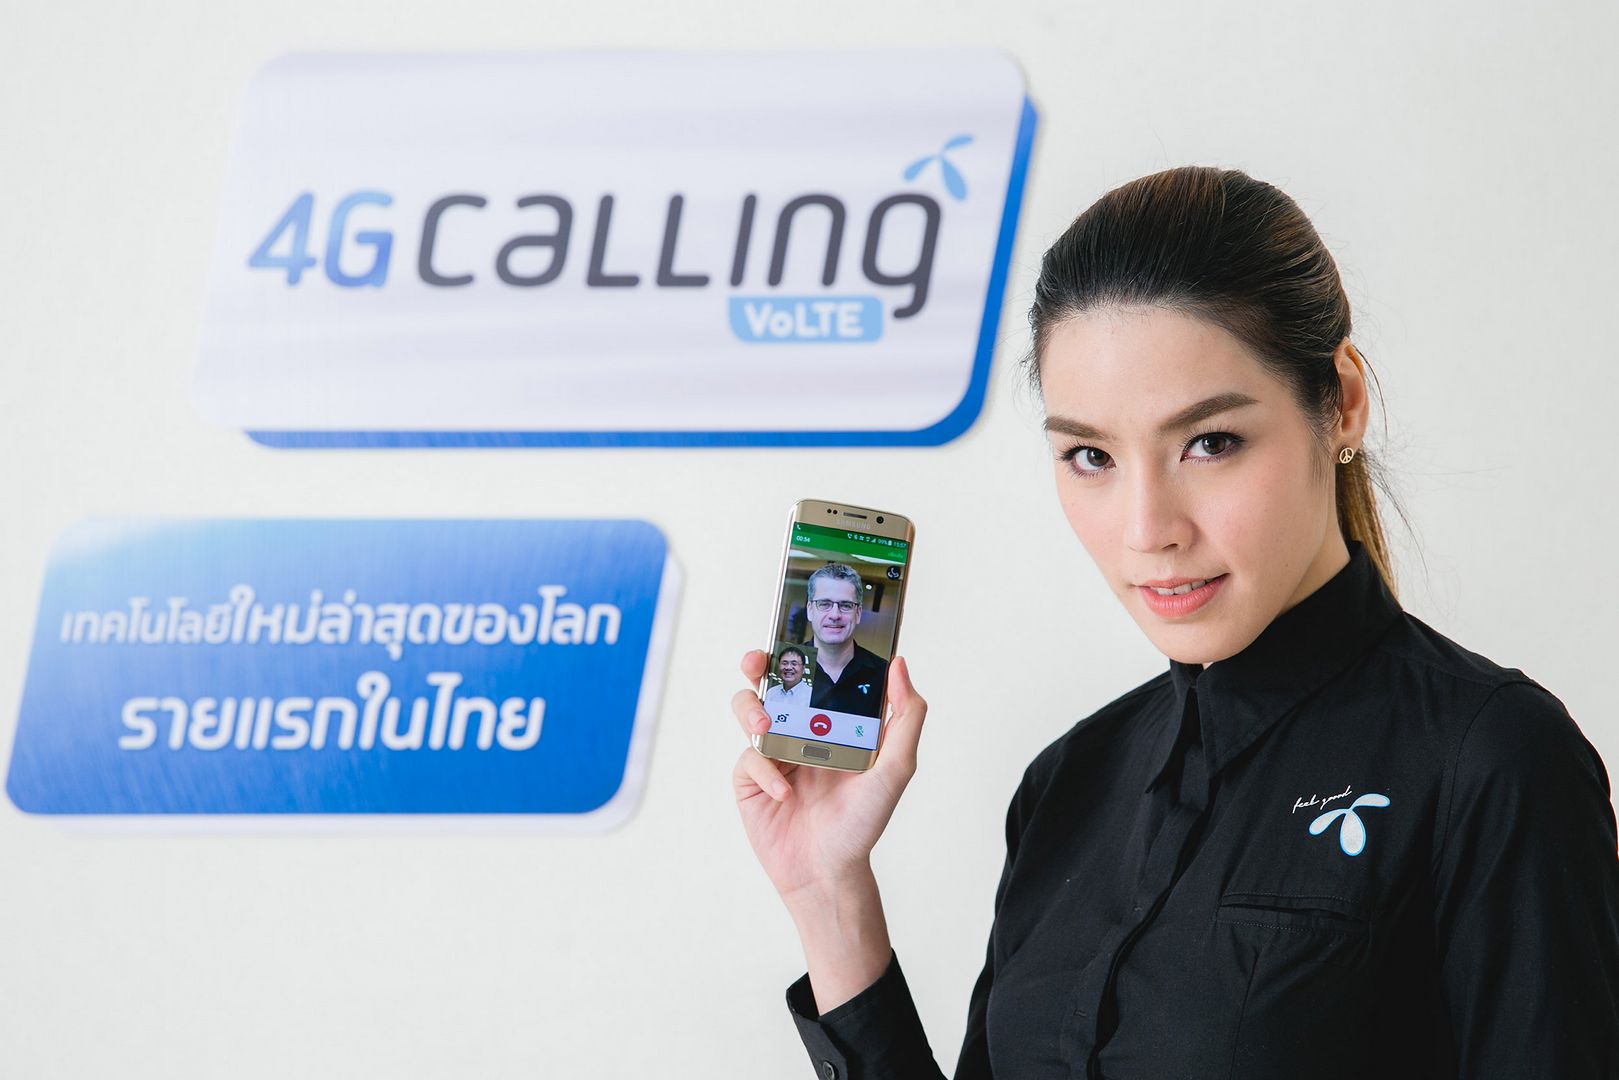 dtac เปิดตัว 4G Calling | VoLTE เทคโนโลยีใหม่ล่าสุดของโลก รายแรกของไทย